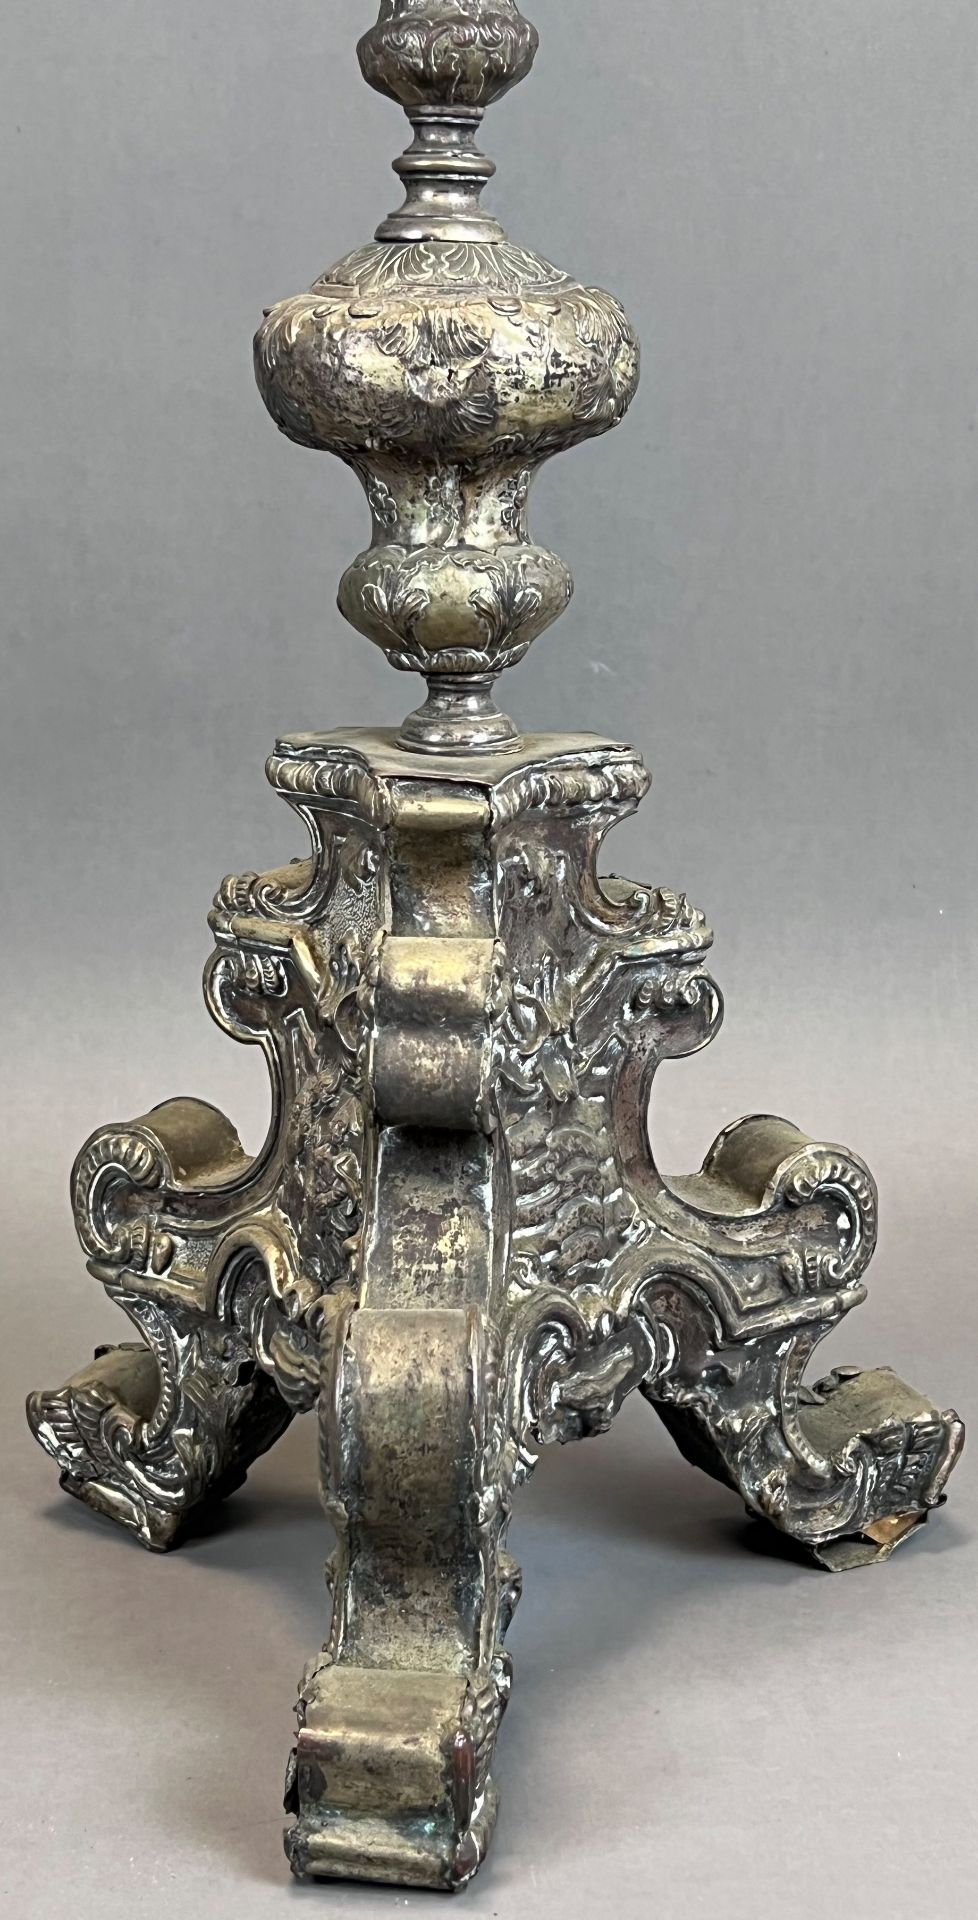 Großes Standkreuz. Altarkreuz. Um 1700. Frankreich. - Bild 4 aus 16